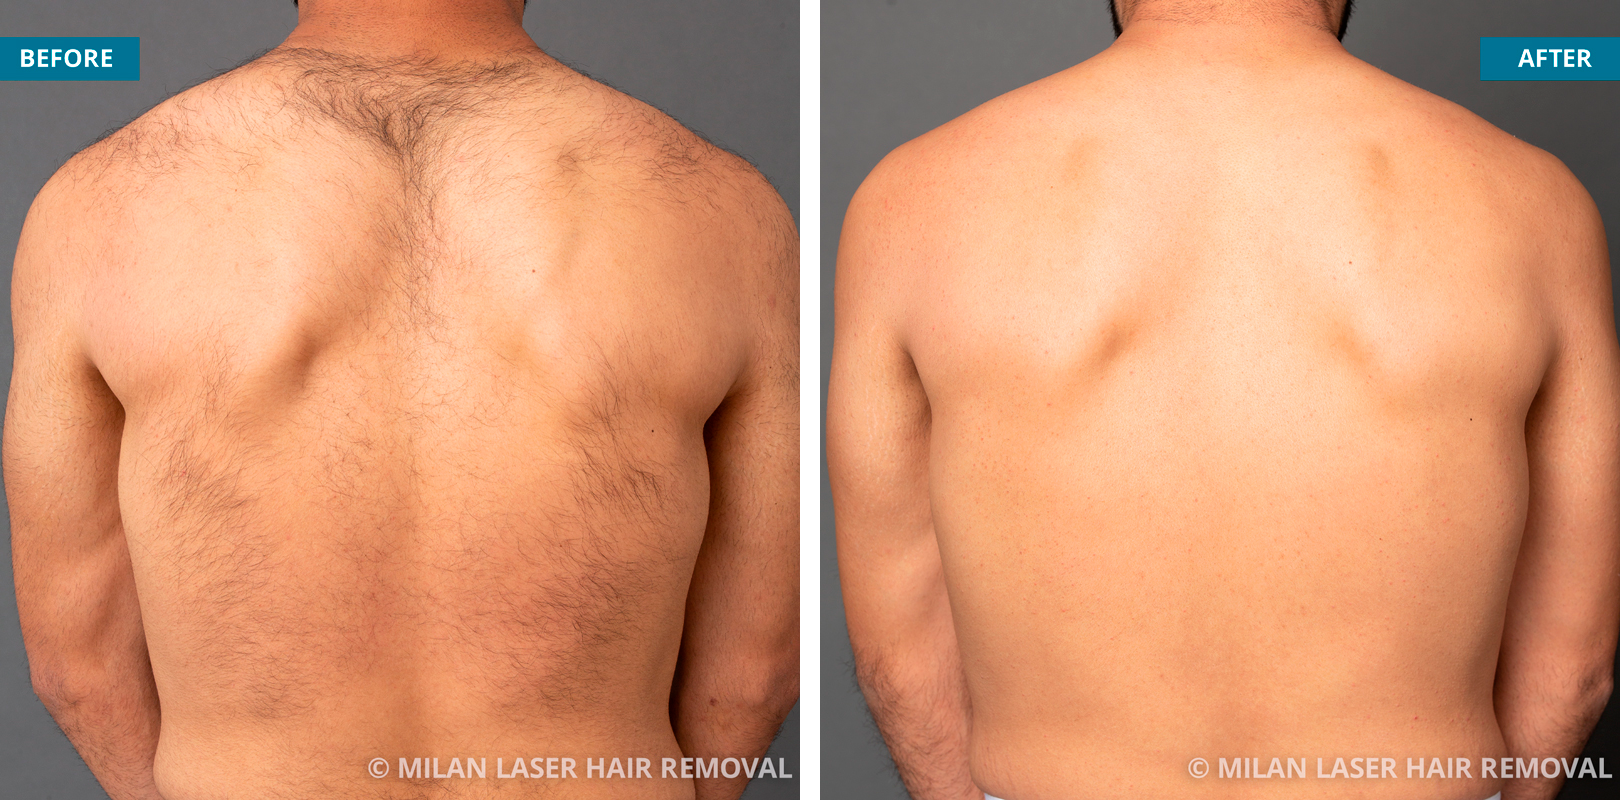 Men’s back after sessions at Milan laser hair removal Source: Milan laser hair removal